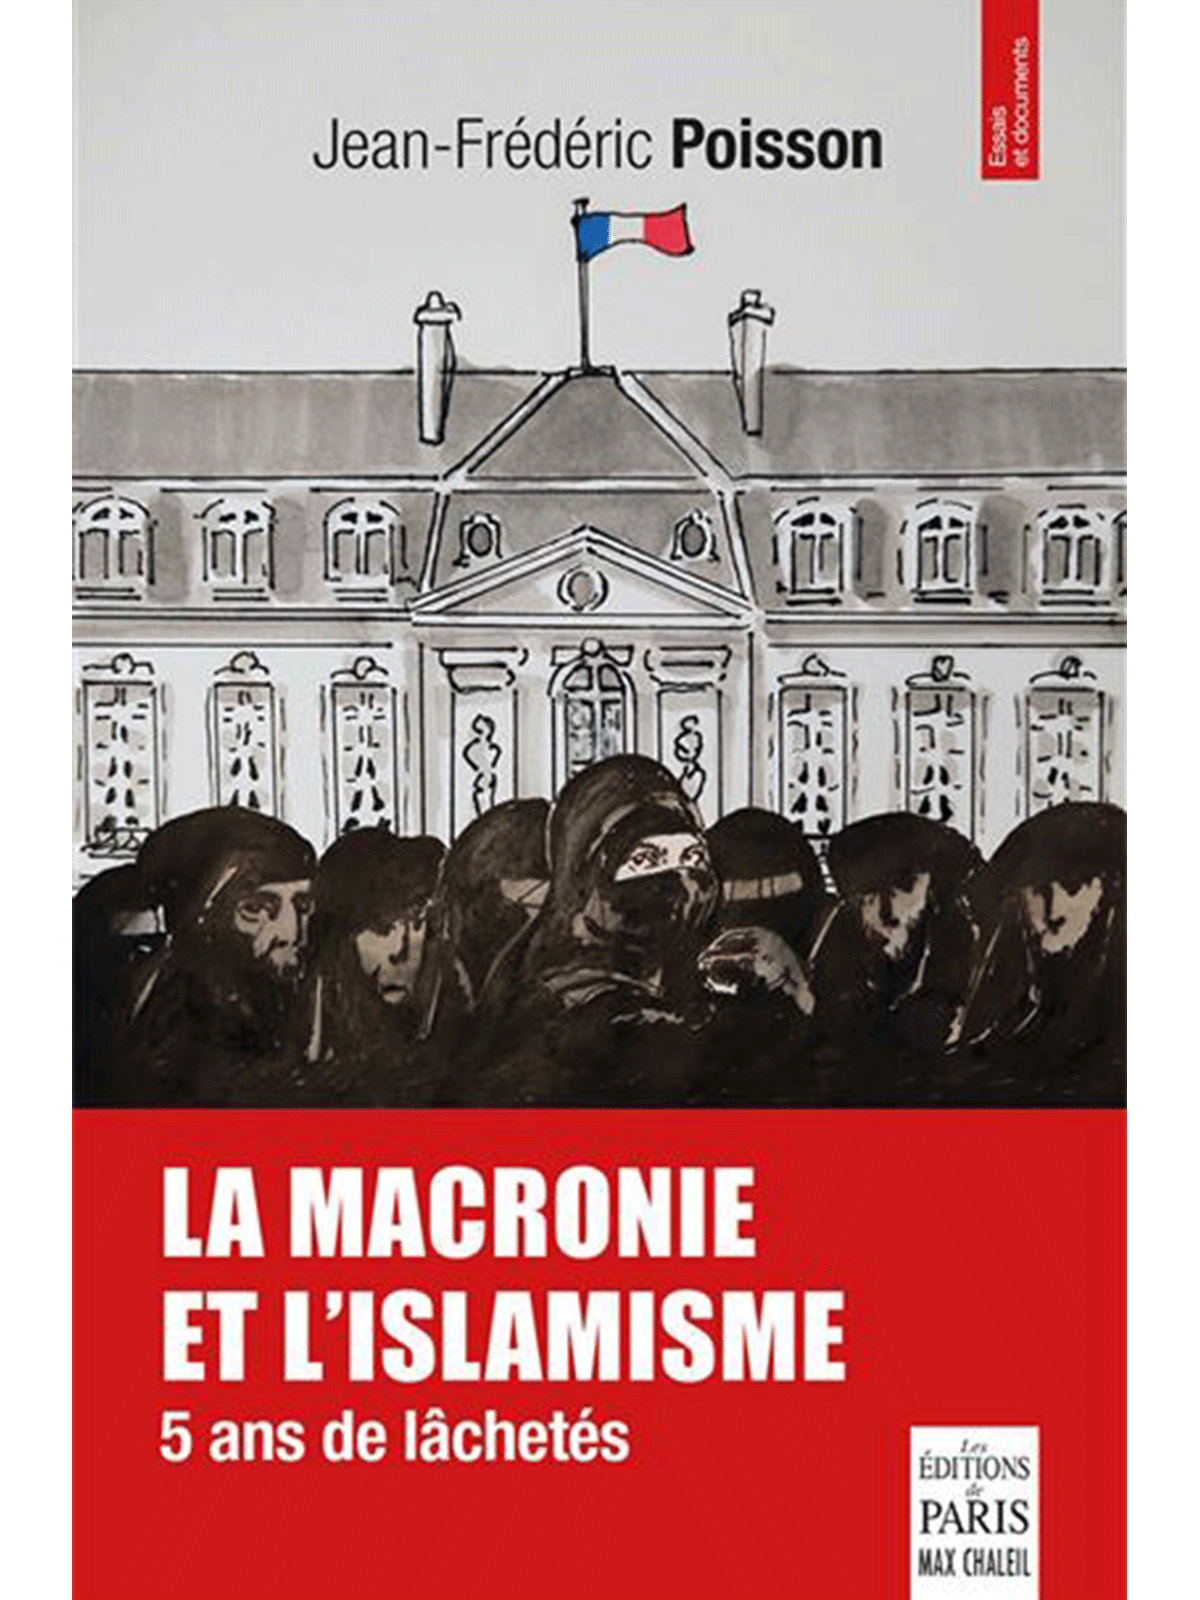 Jean-Frédéric Poisson : La macronie et l'islamisme: 5 ans de lâchetés